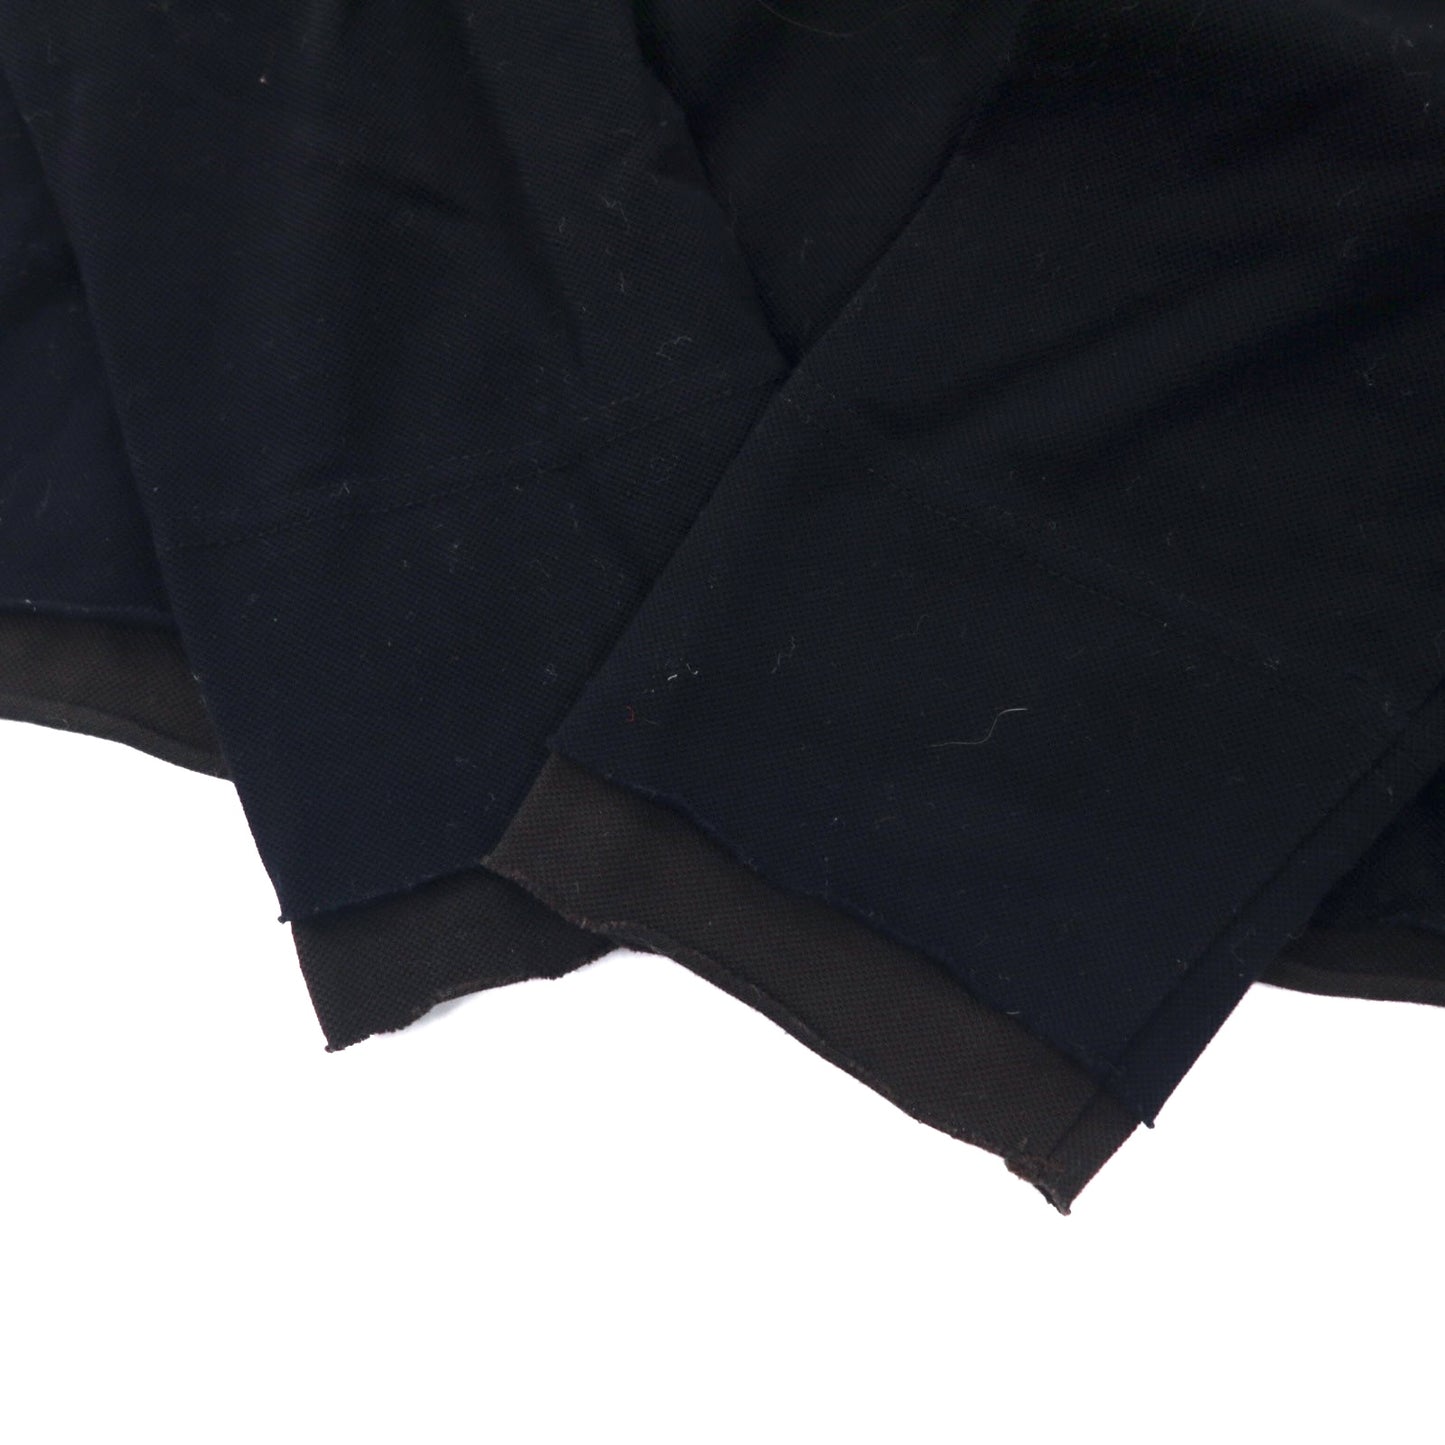 Paul Smith COLLECTION オープンカラー 長袖 ポロシャツ M ブラック コットン 鹿の子 レイヤードデザイン 日本製